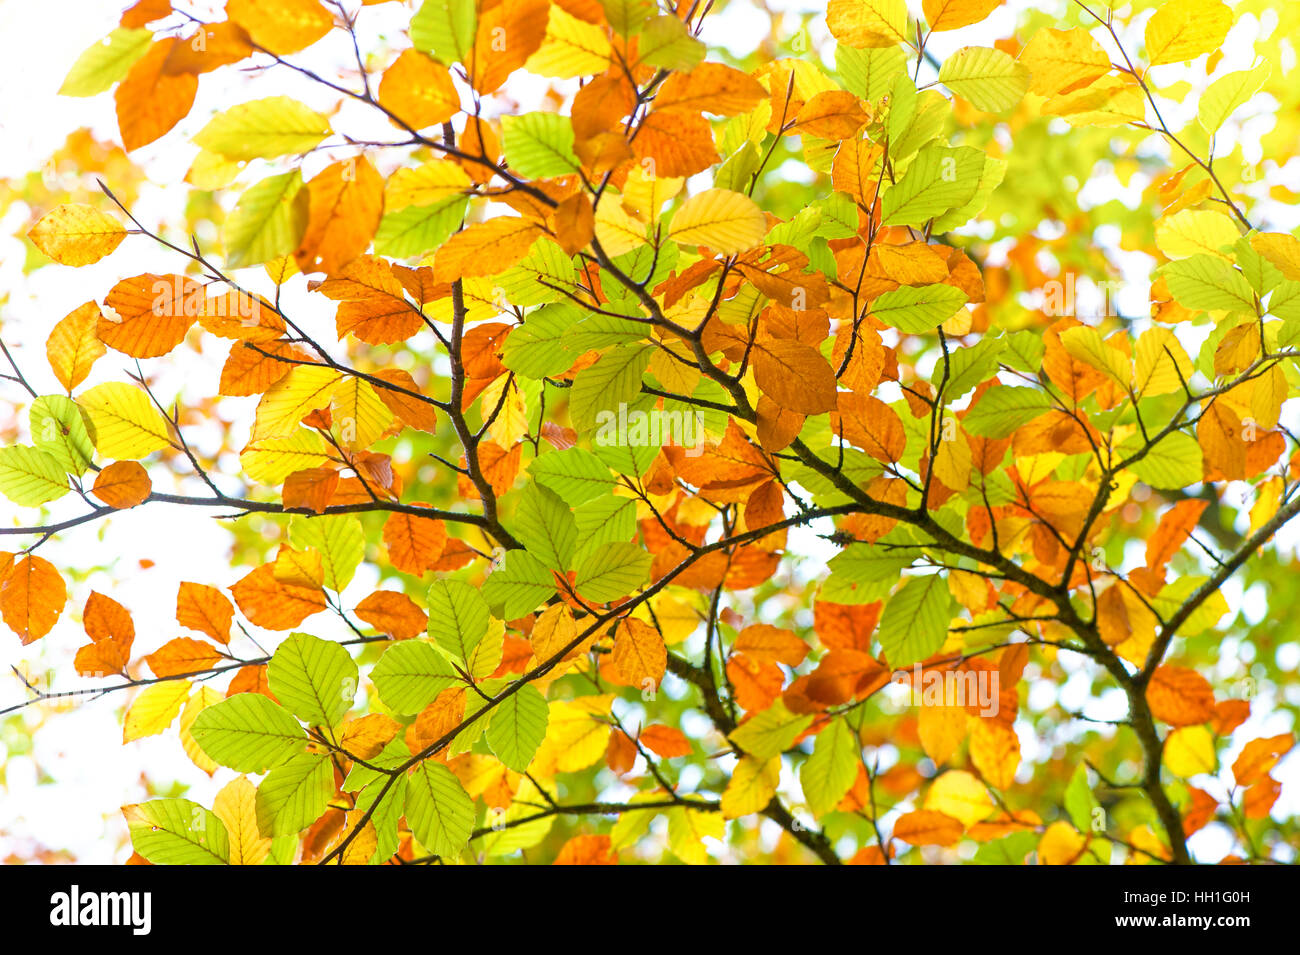 Couleur animé automne/automne hêtre commun Fagus sylvatica arbre part - Banque D'Images